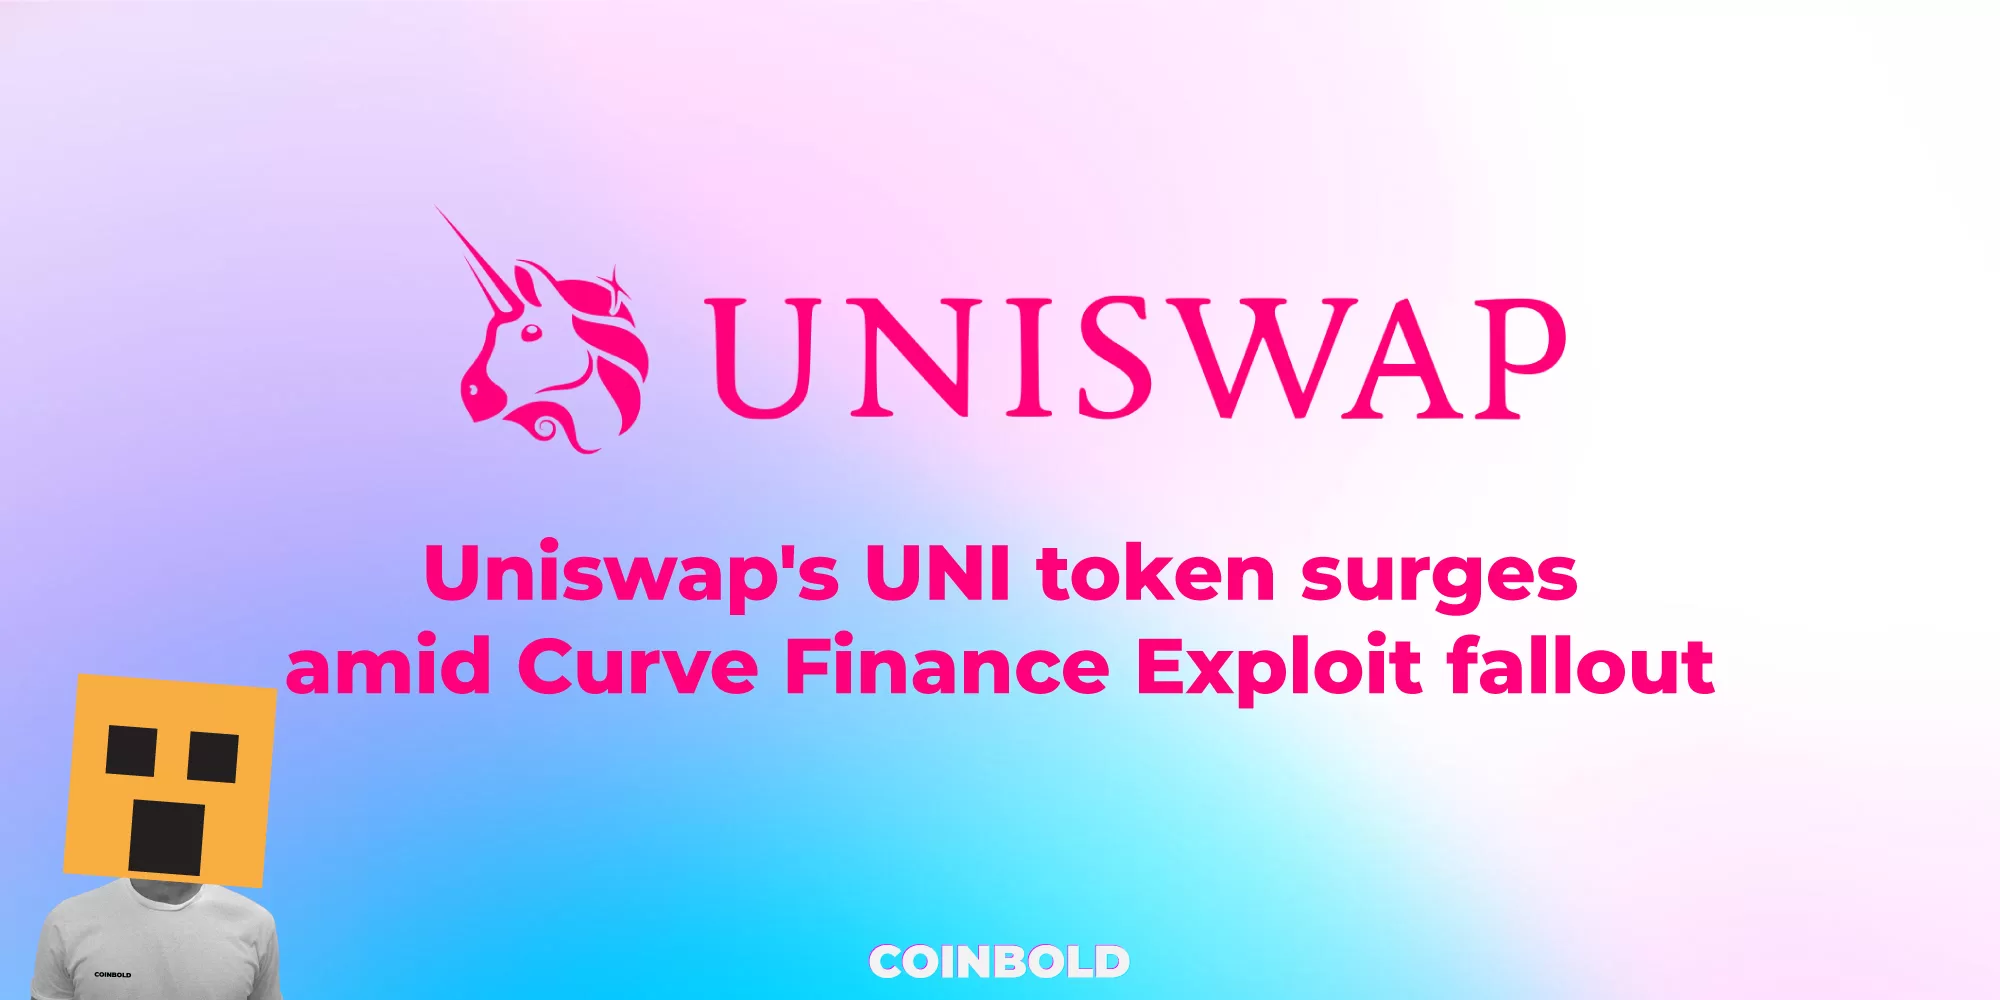 Uniswap's UNI token surges amid Curve Finance Exploit fallout.